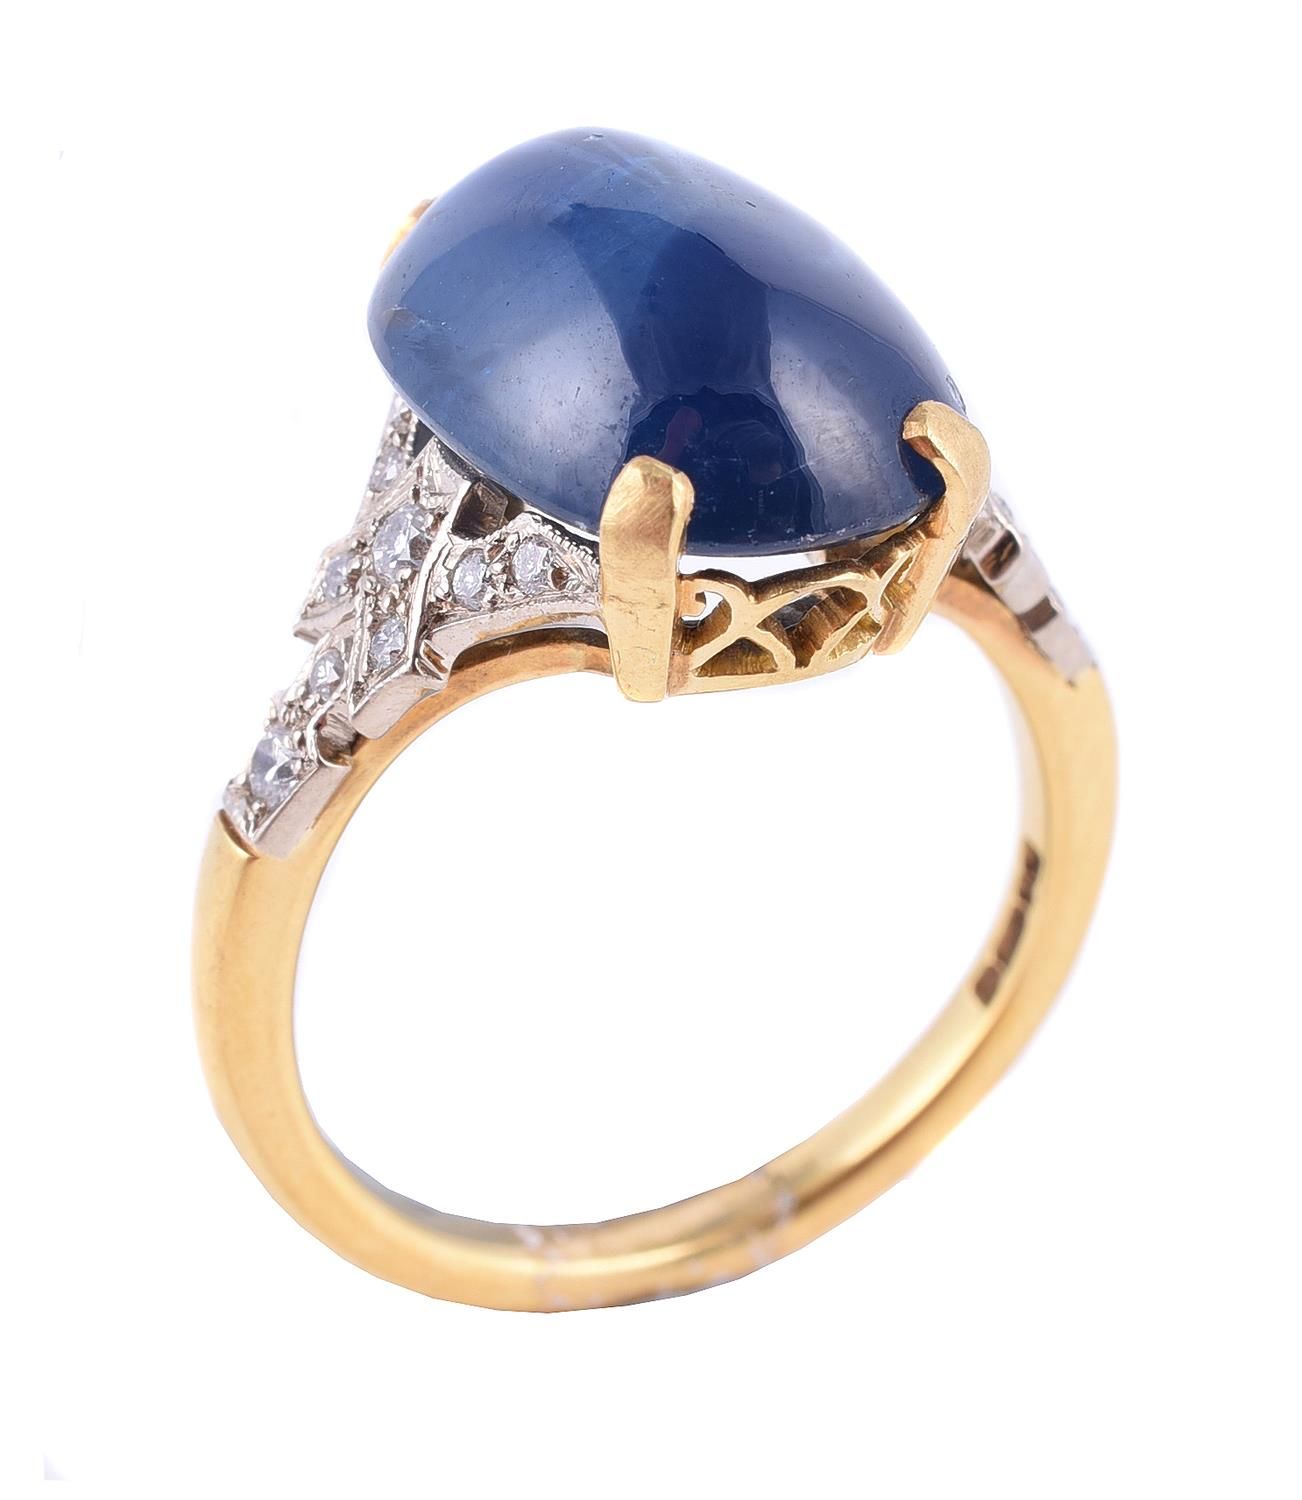 A Sapphire and Diamond Ring 蓝宝石和钻石戒指，四爪镶嵌的椭圆形凸圆形蓝宝石，肩部镶嵌异形明亮式切割钻石，18K金印记，手指尺寸M 1&hellip;